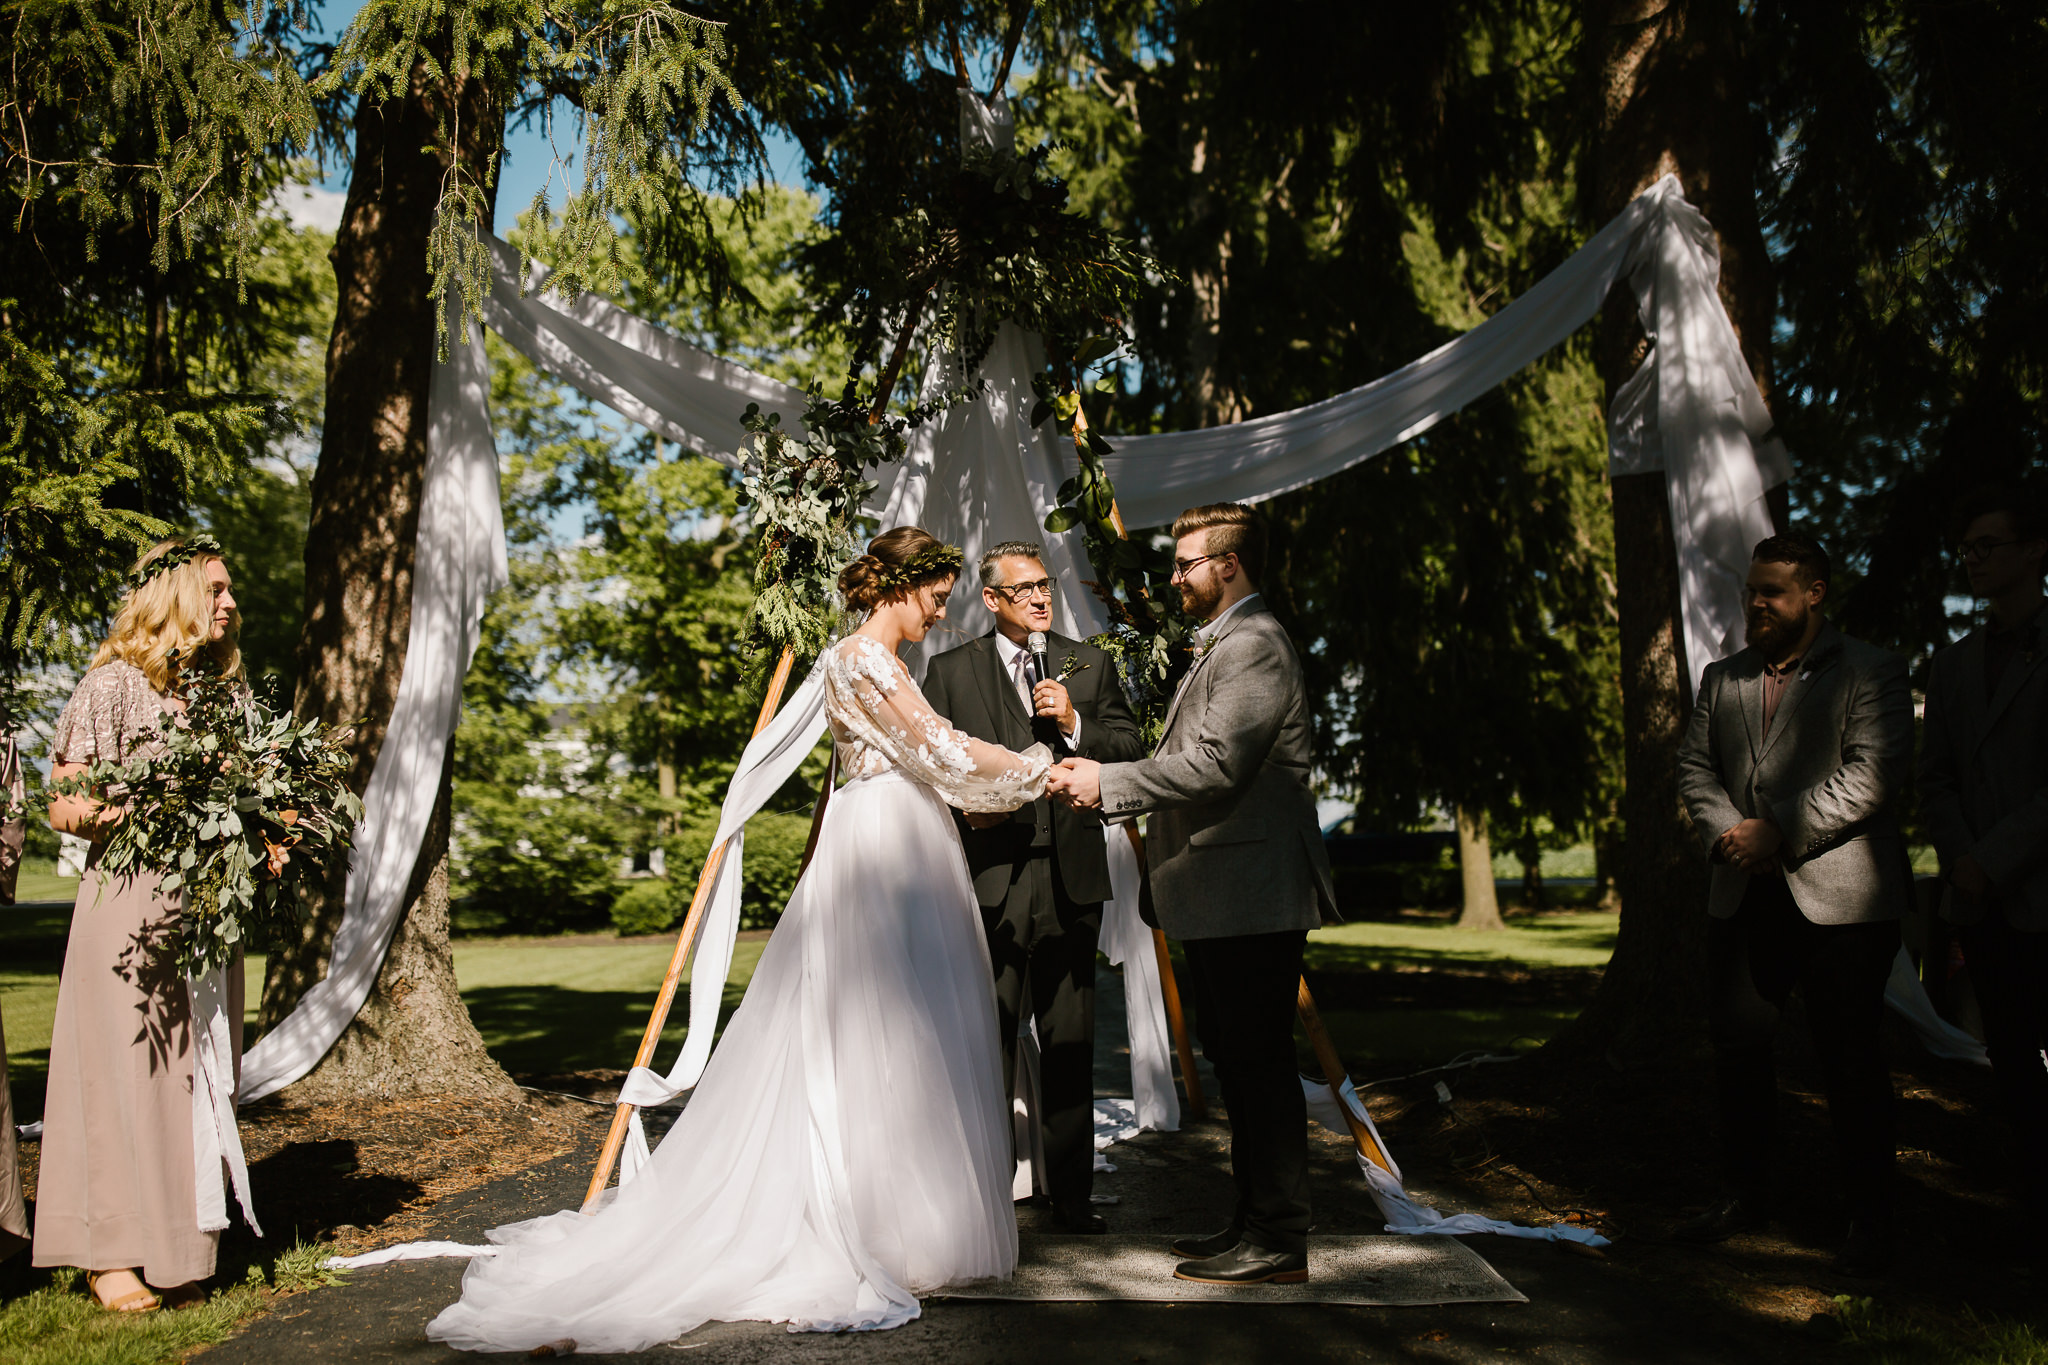 eastlyn and joshua findlay ohio wedding photographers bohemian outdoor wedding-108.jpg